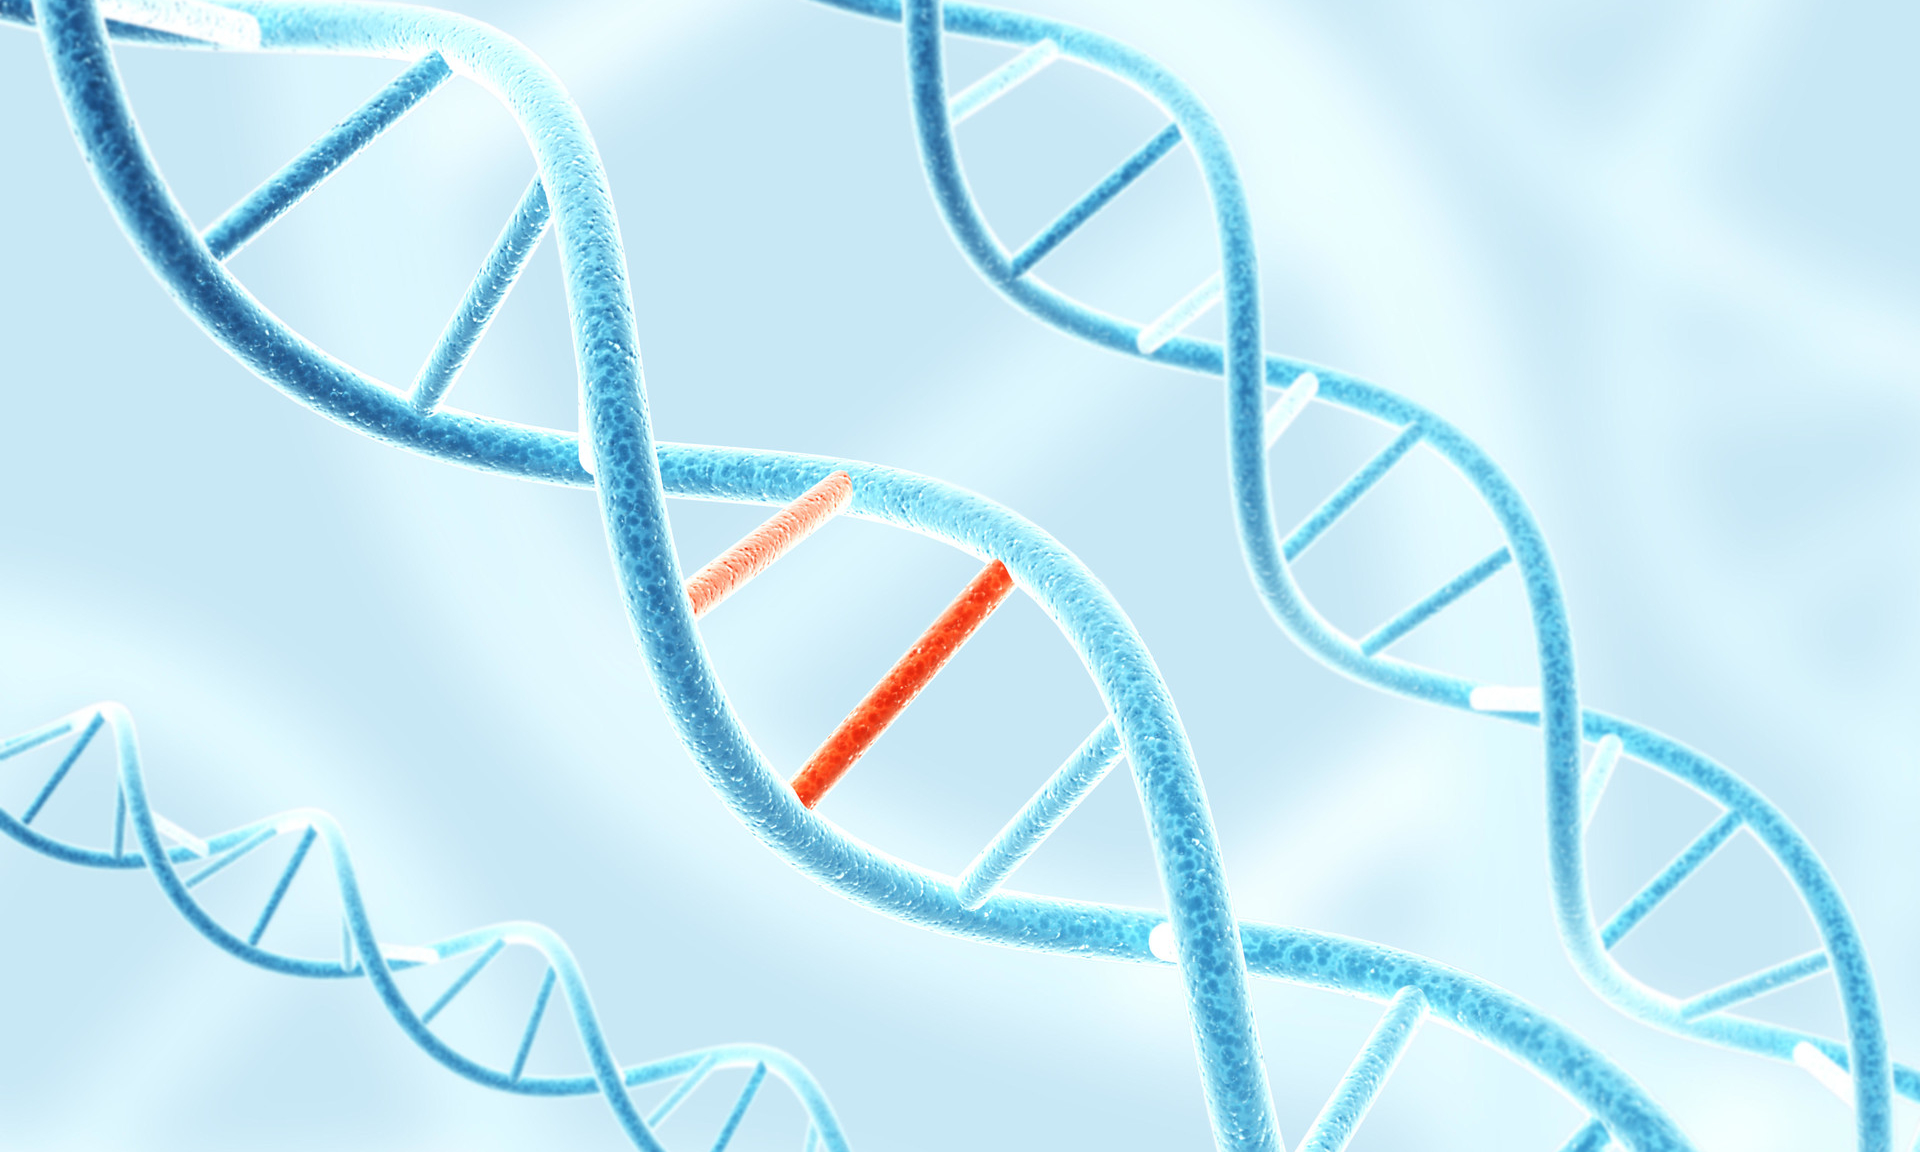 Генетические мутации могут быть не столь хаотичными, как считалось ранее